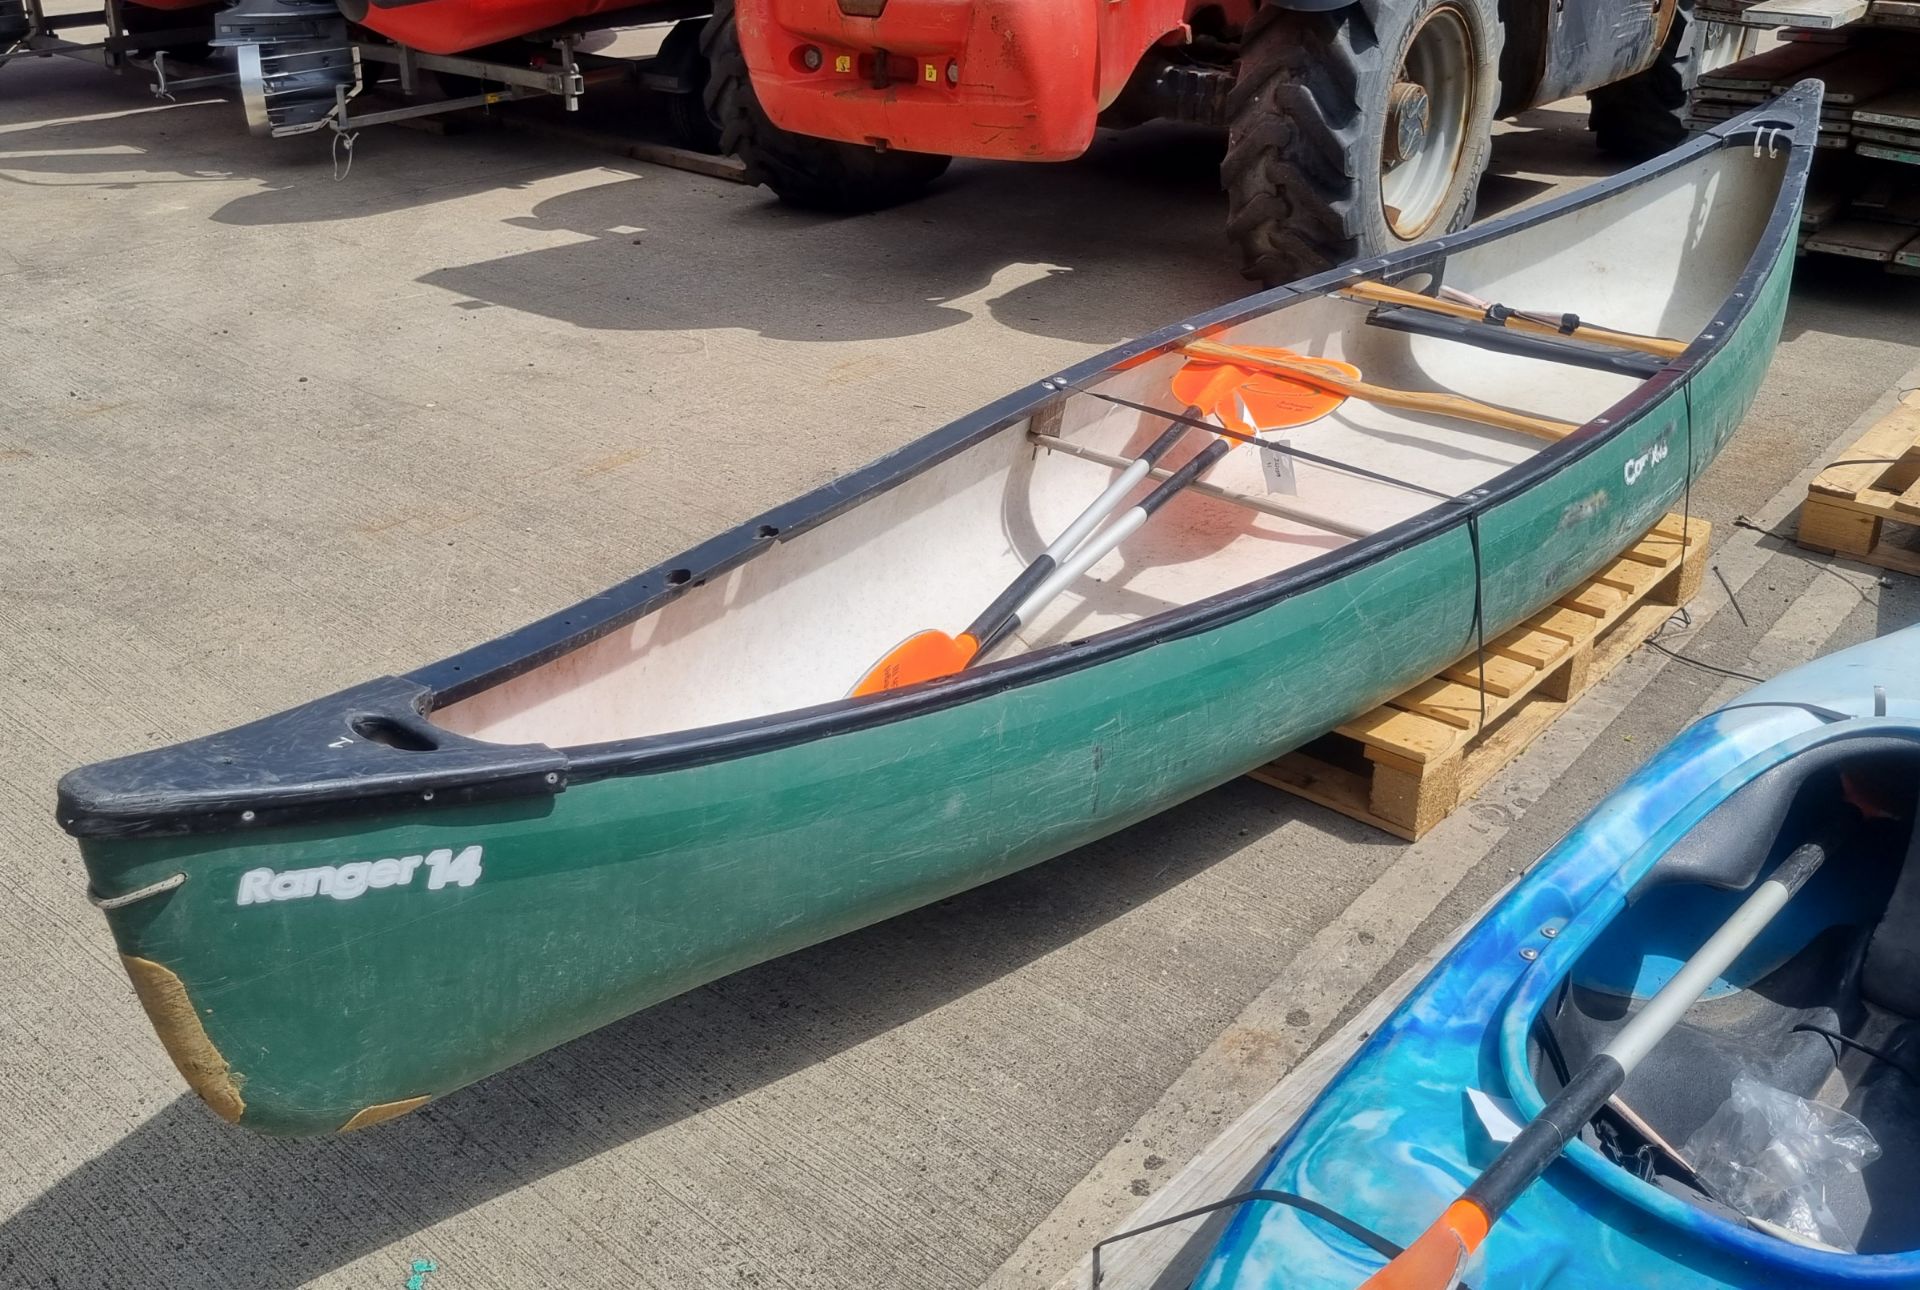 V Ranger canoe 11 - L491 x W89 x H35cm - Image 3 of 6